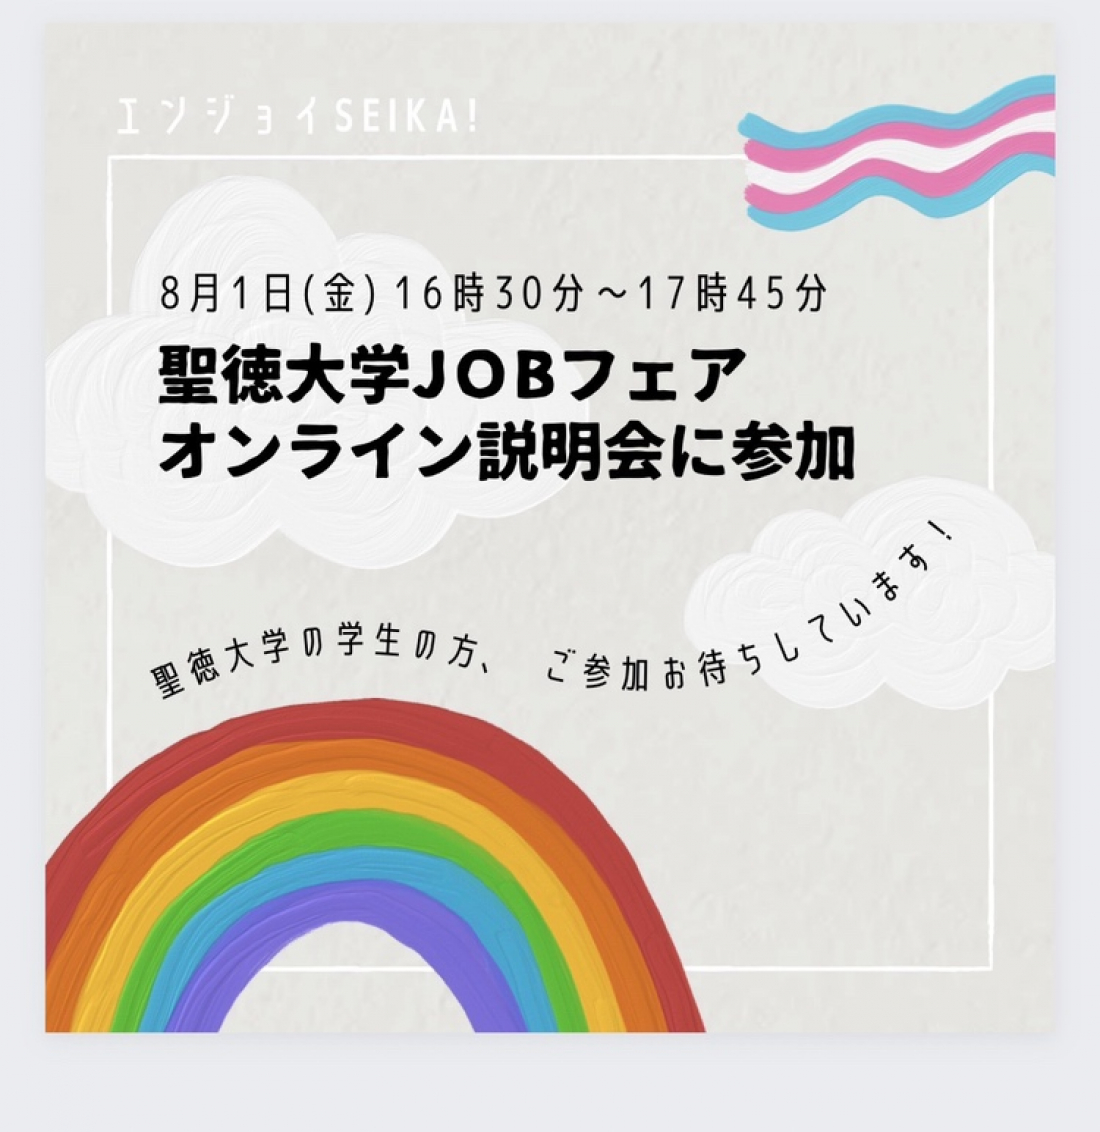 『聖徳大学JOBフェア　オンライン説明会』に参加します！！